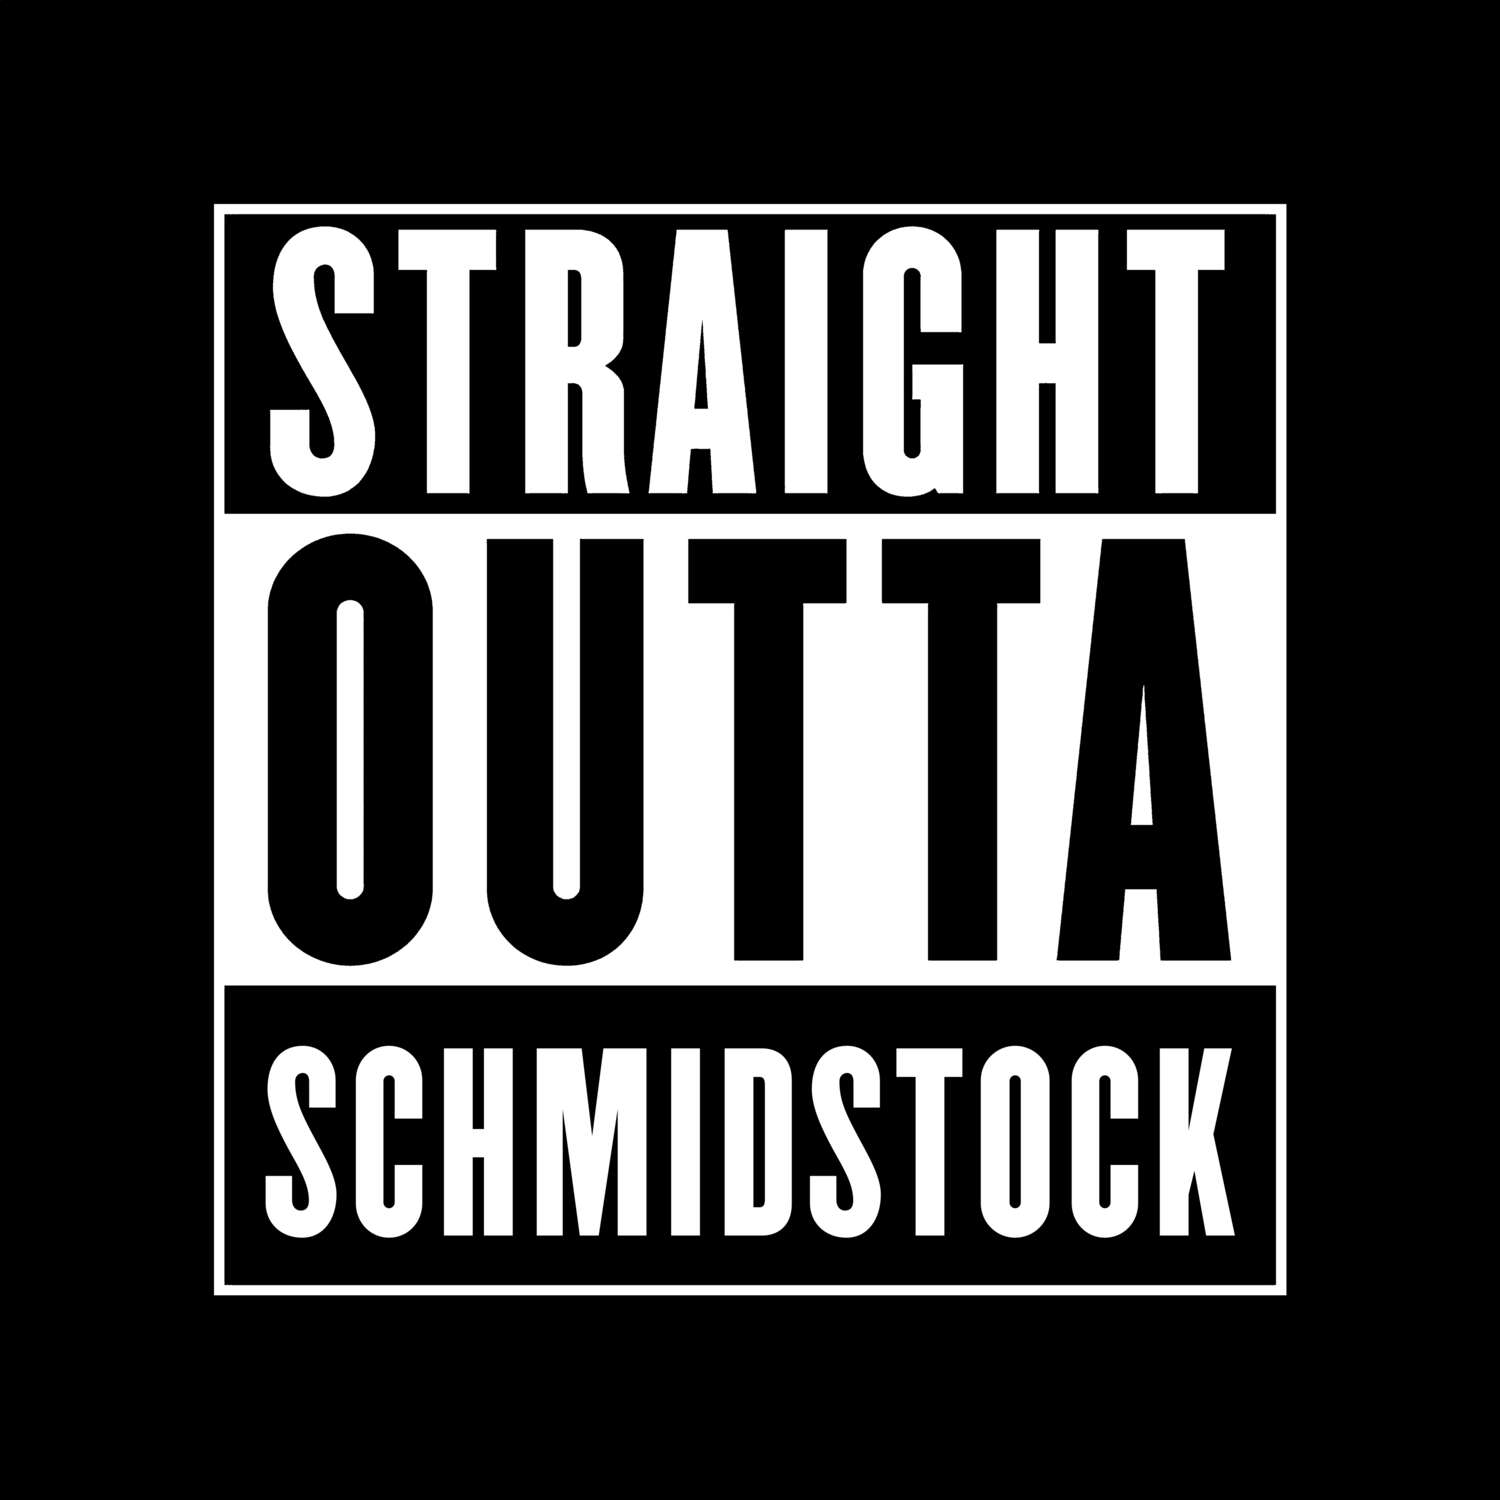 Schmidstock T-Shirt »Straight Outta«